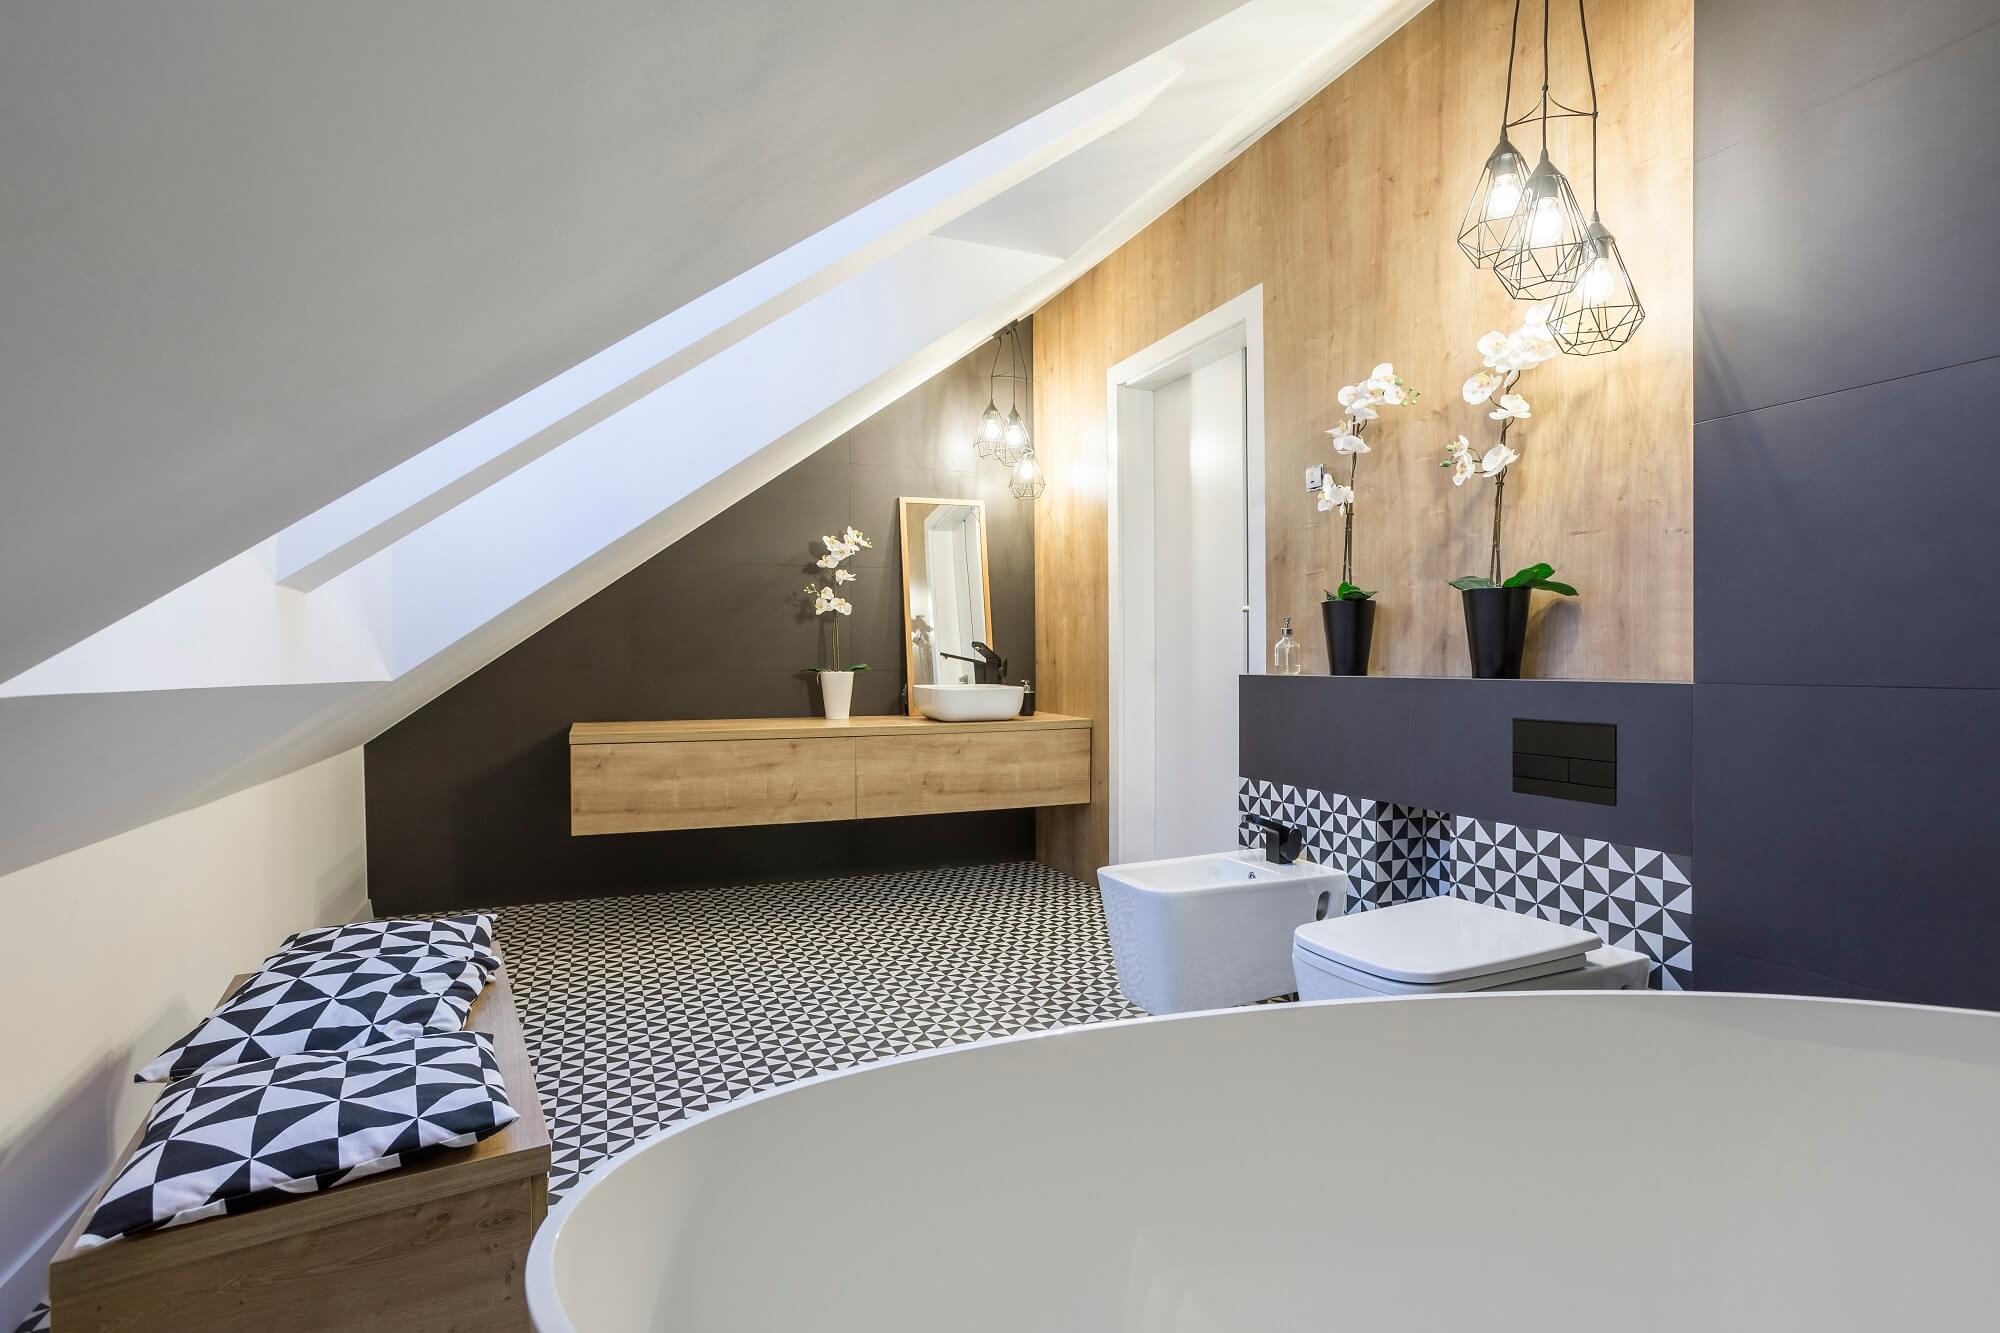 Modernly designed attic bathroom with bathtub